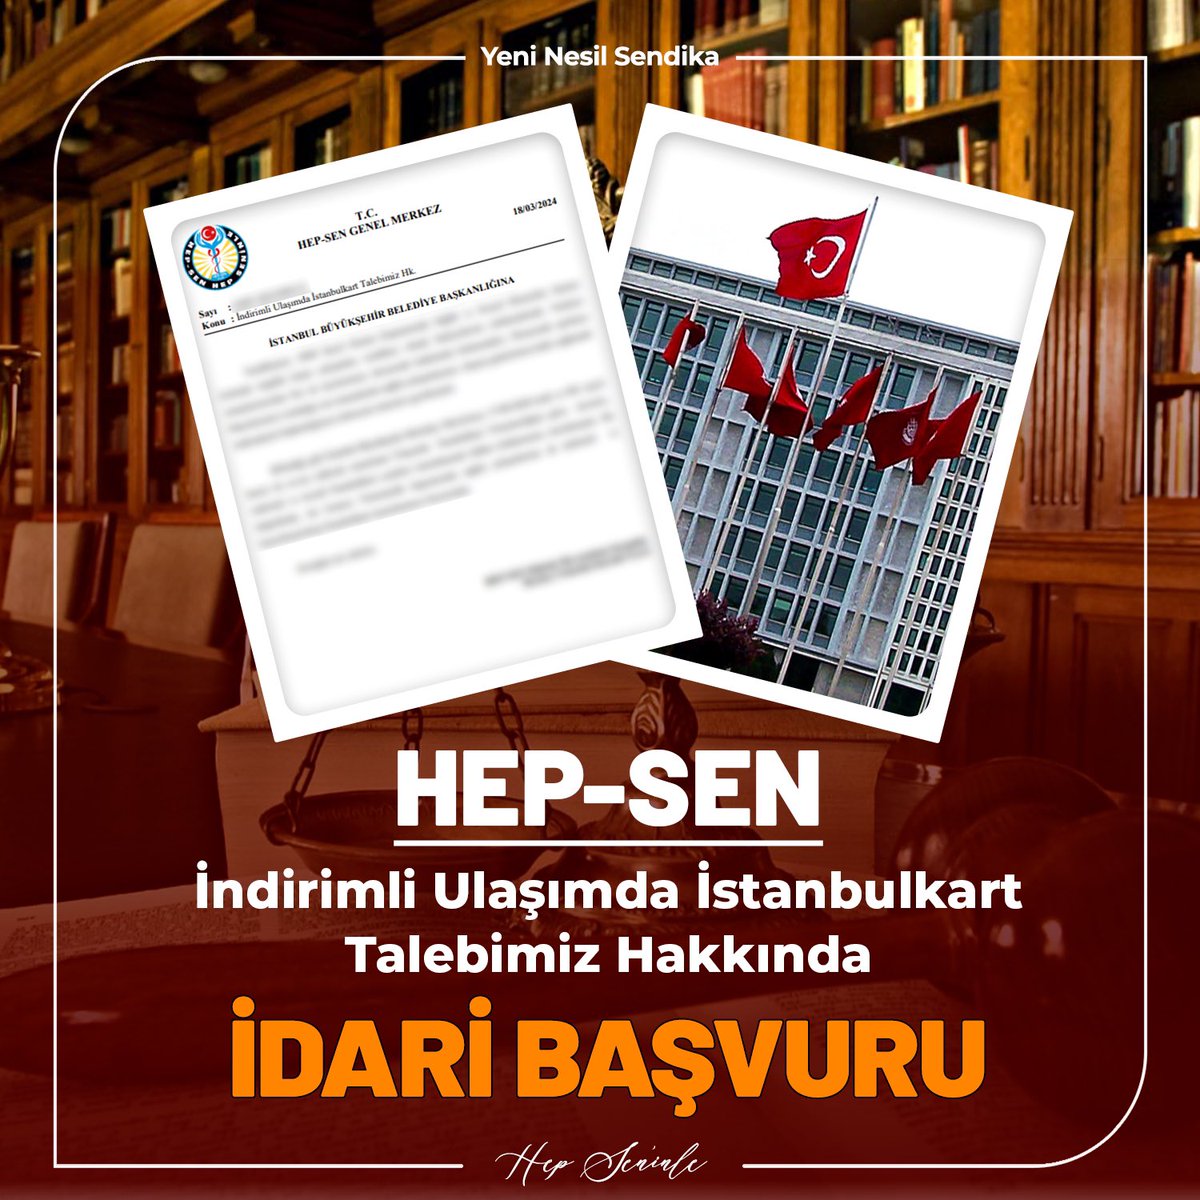 Sağlık Çalışanlarına İndirimli İstanbulkart Talebi Ekonomik şartların bütçelerimizi zorladığı son zamanlarda sağlık çalışanlarının ulaşım giderlerine katkı sağlamak maksadıyla İstanbul Büyükşehir Belediye Başkanlığı'na sağlık çalışanlarına indirimli kişiselleştirilmiş…